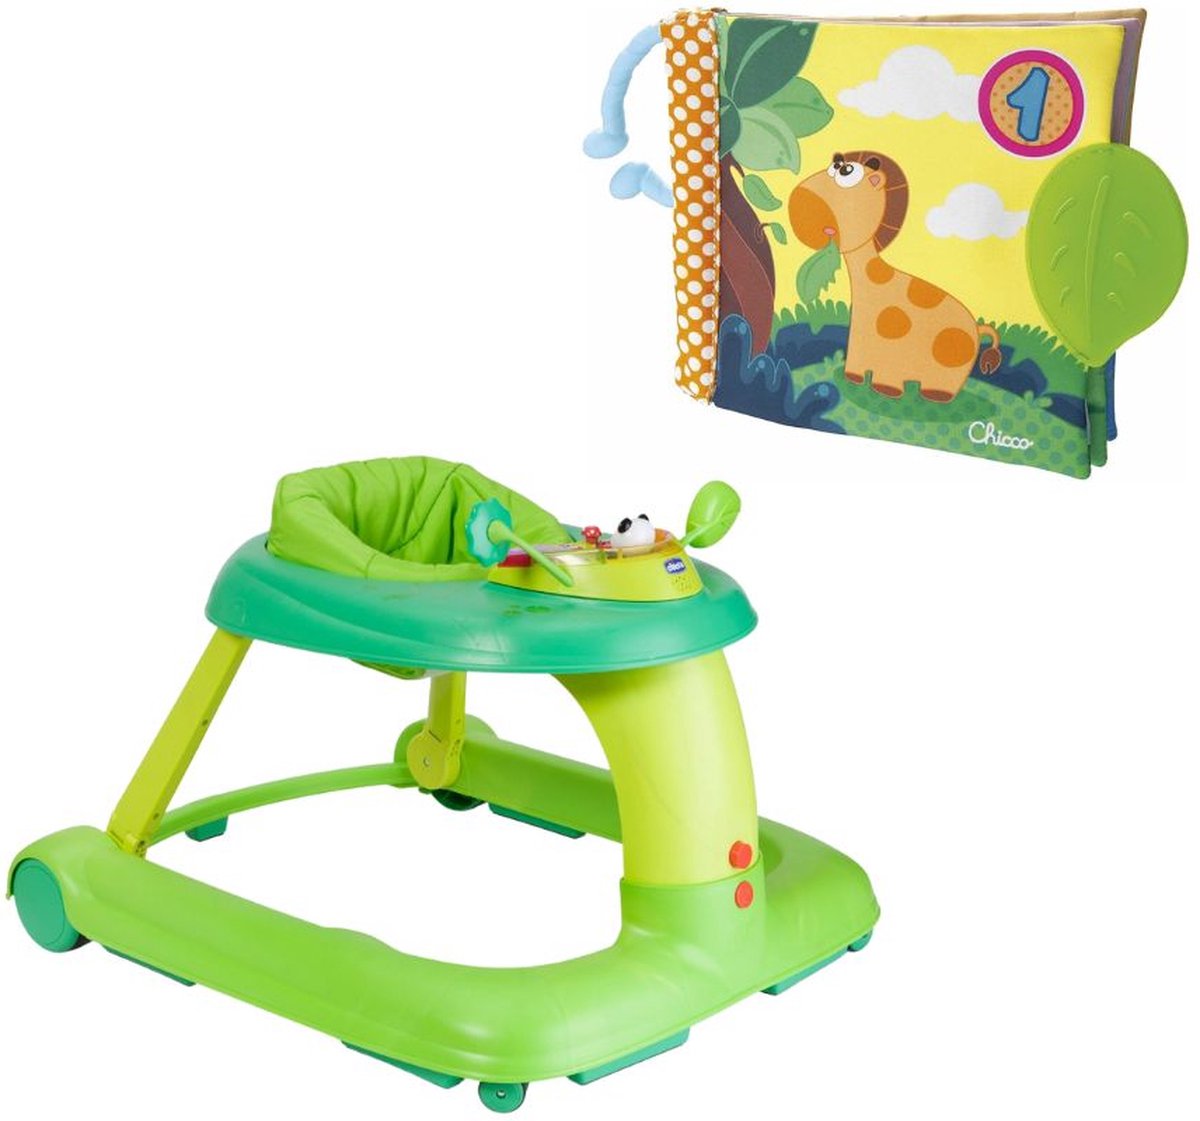 Chicco Bundel - 123 Loopstoel & Babyboekje Junior - Groen